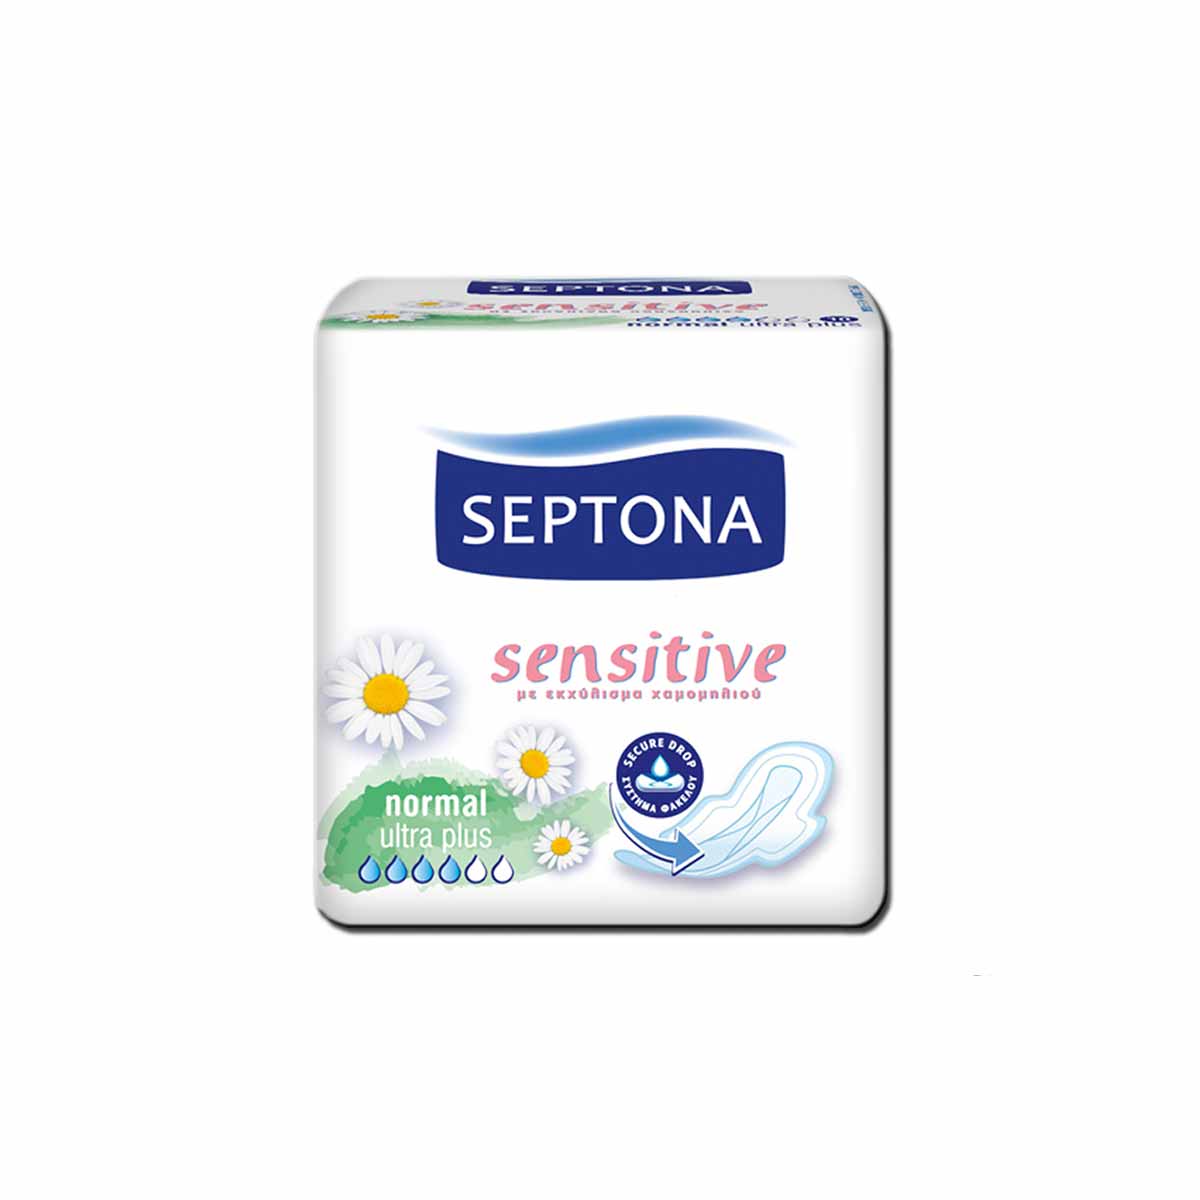  نوار بهداشتی سپتونا مدل حساس نرمال Septona بسته 10 عددی